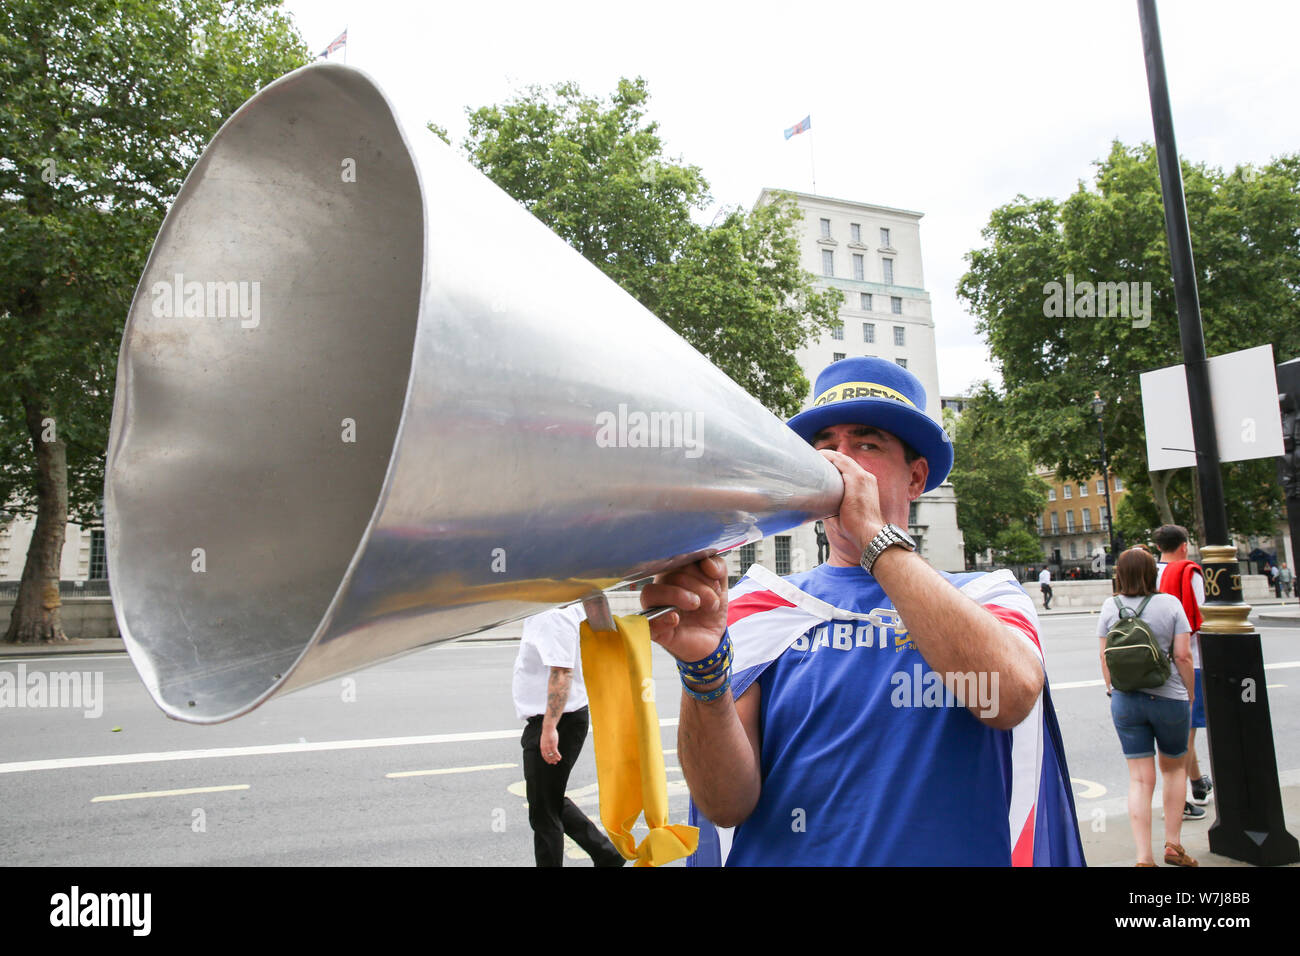 Militant pro-UE Steven Bray avec un mégaphone en portant un 'Stop' Brexit hat qui protestaient devant le Bureau du Conseil des ministres à Whitehall, Westminster, Londres. Banque D'Images